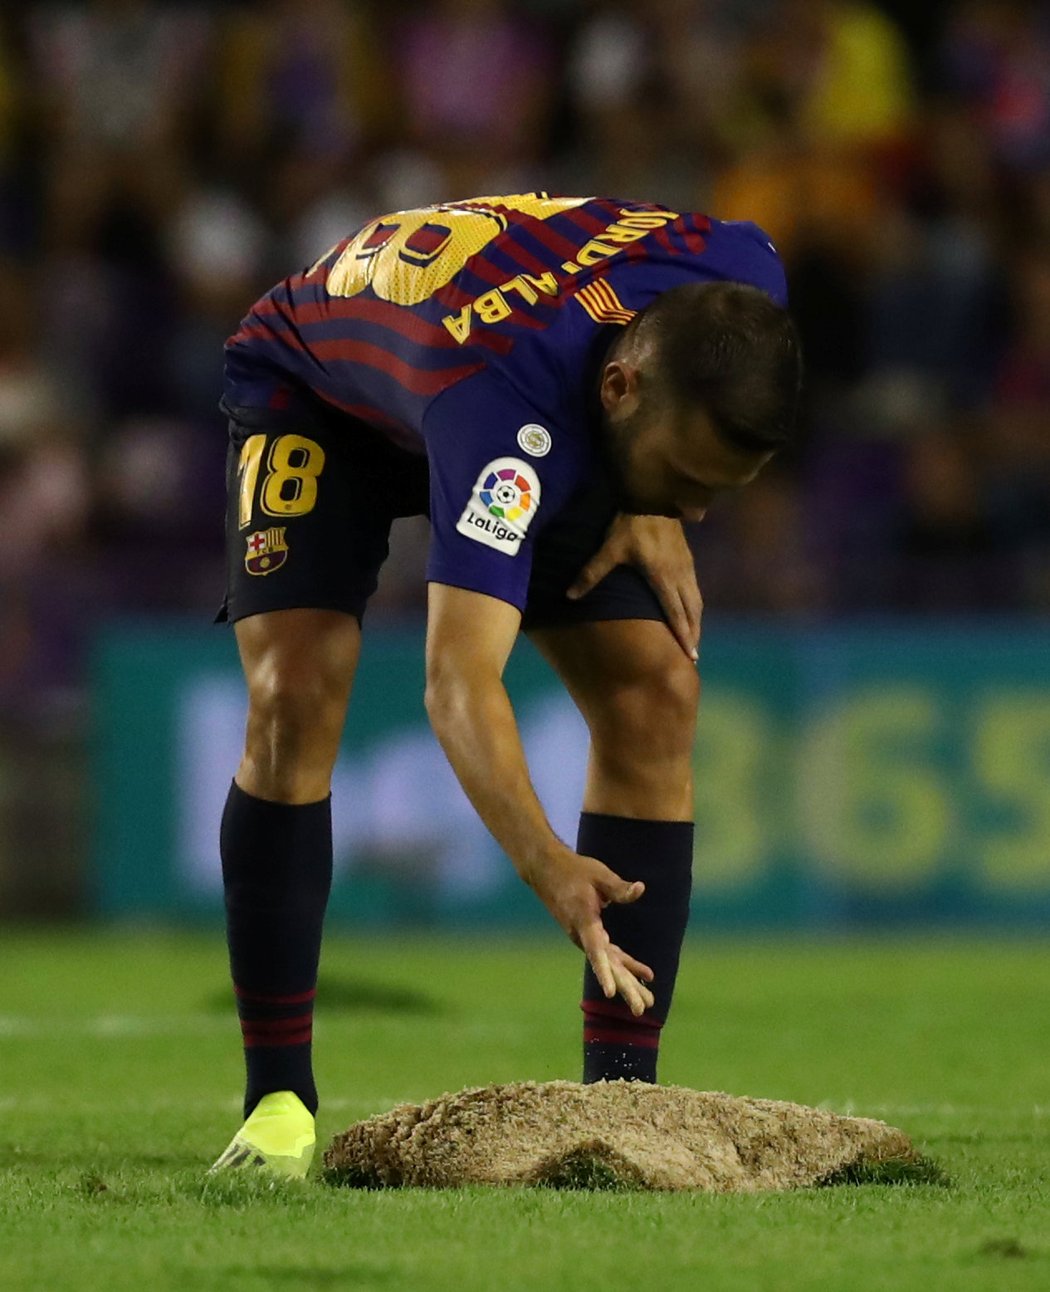 Jordi Alba spravuje vytržený kus trávníku